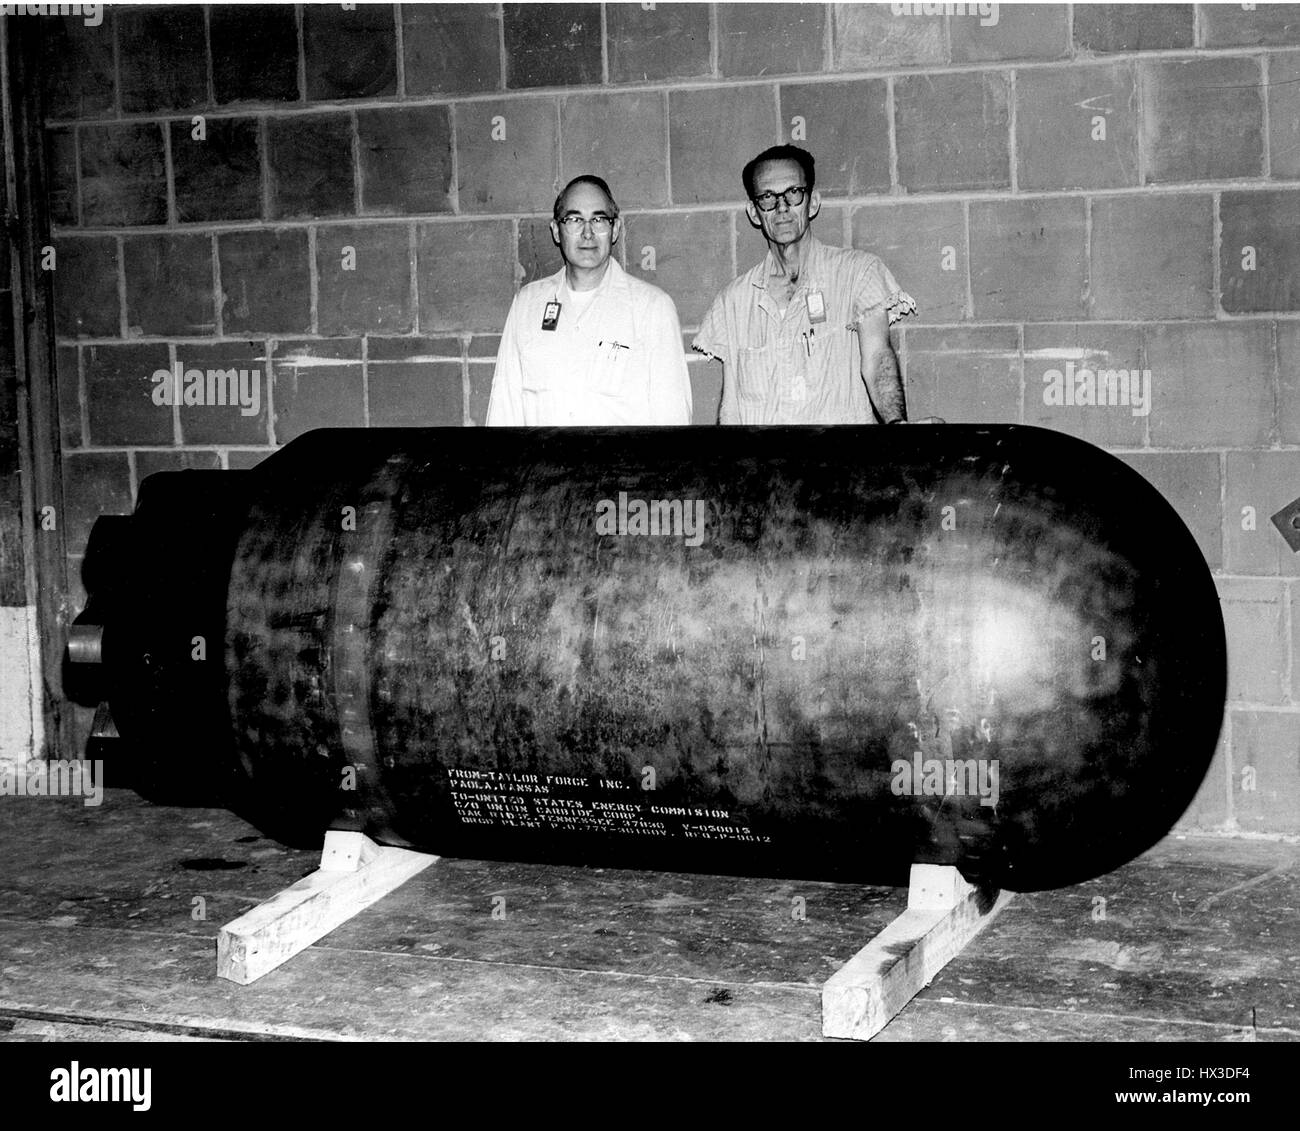 Una raffreddati ad acqua recipiente reattore di modello che è stato volutamente manipolate e poi messo sotto pressione al punto di errore per ottenere dati, 1973. Immagine cortesia del Dipartimento Americano di Energia. Foto Stock